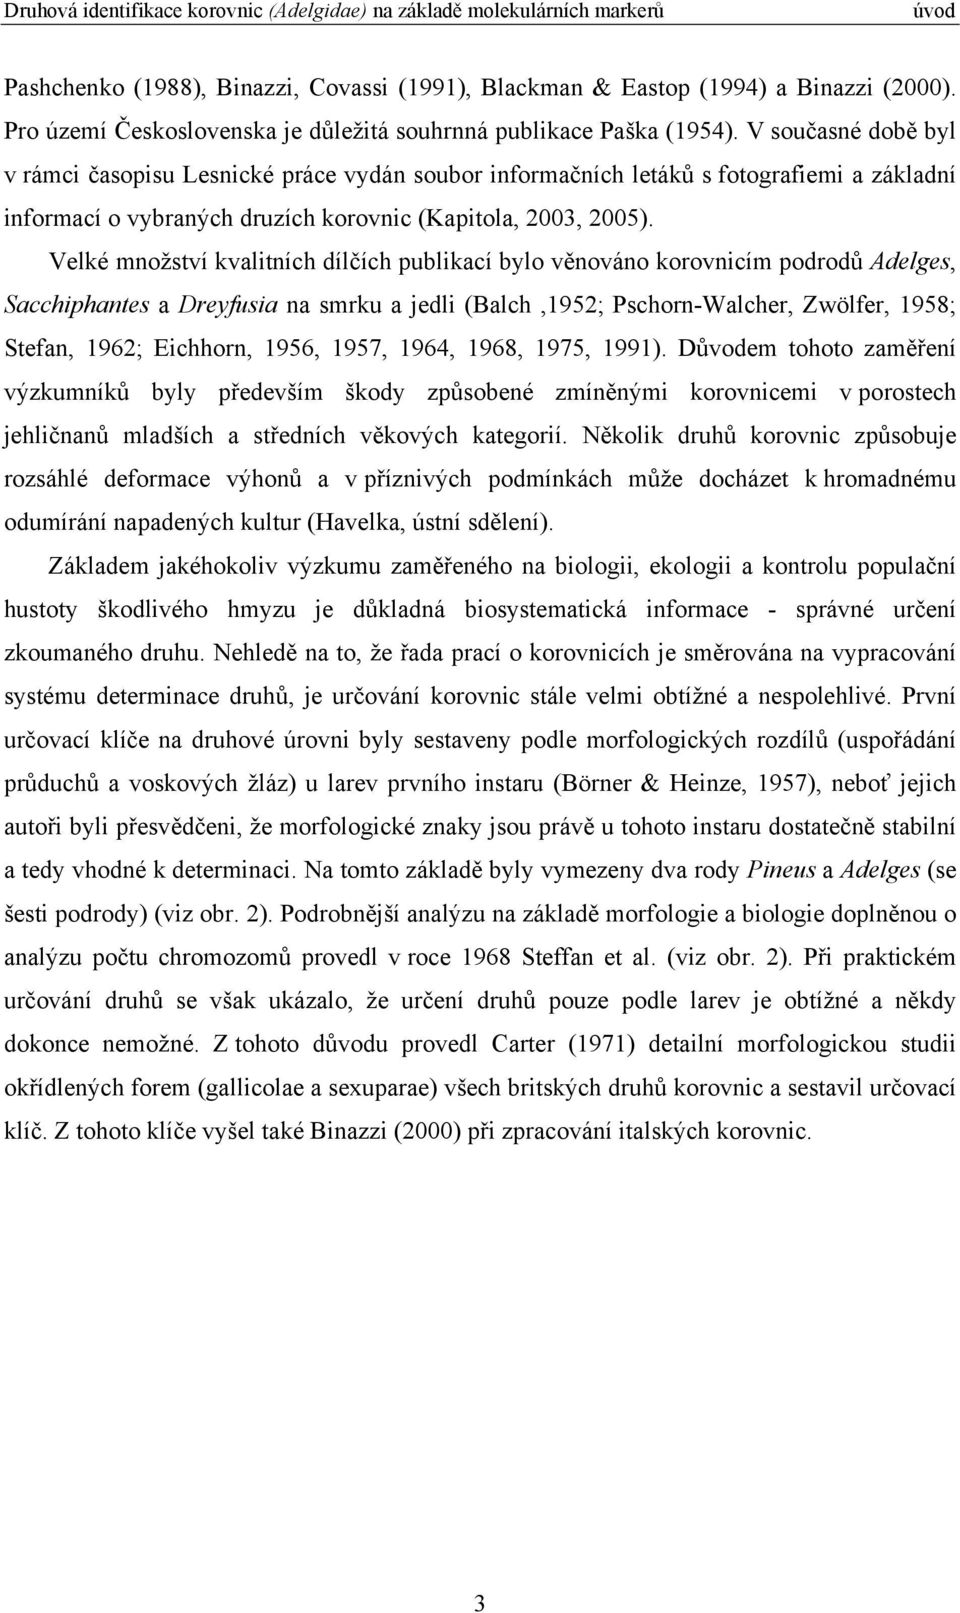 Velké množství kvalitních dílčích publikací bylo věnováno korovnicím podrodů Adelges, Sacchiphantes a Dreyfusia na smrku a jedli (Balch,1952; Pschorn-Walcher, Zwölfer, 1958; Stefan, 1962; Eichhorn,